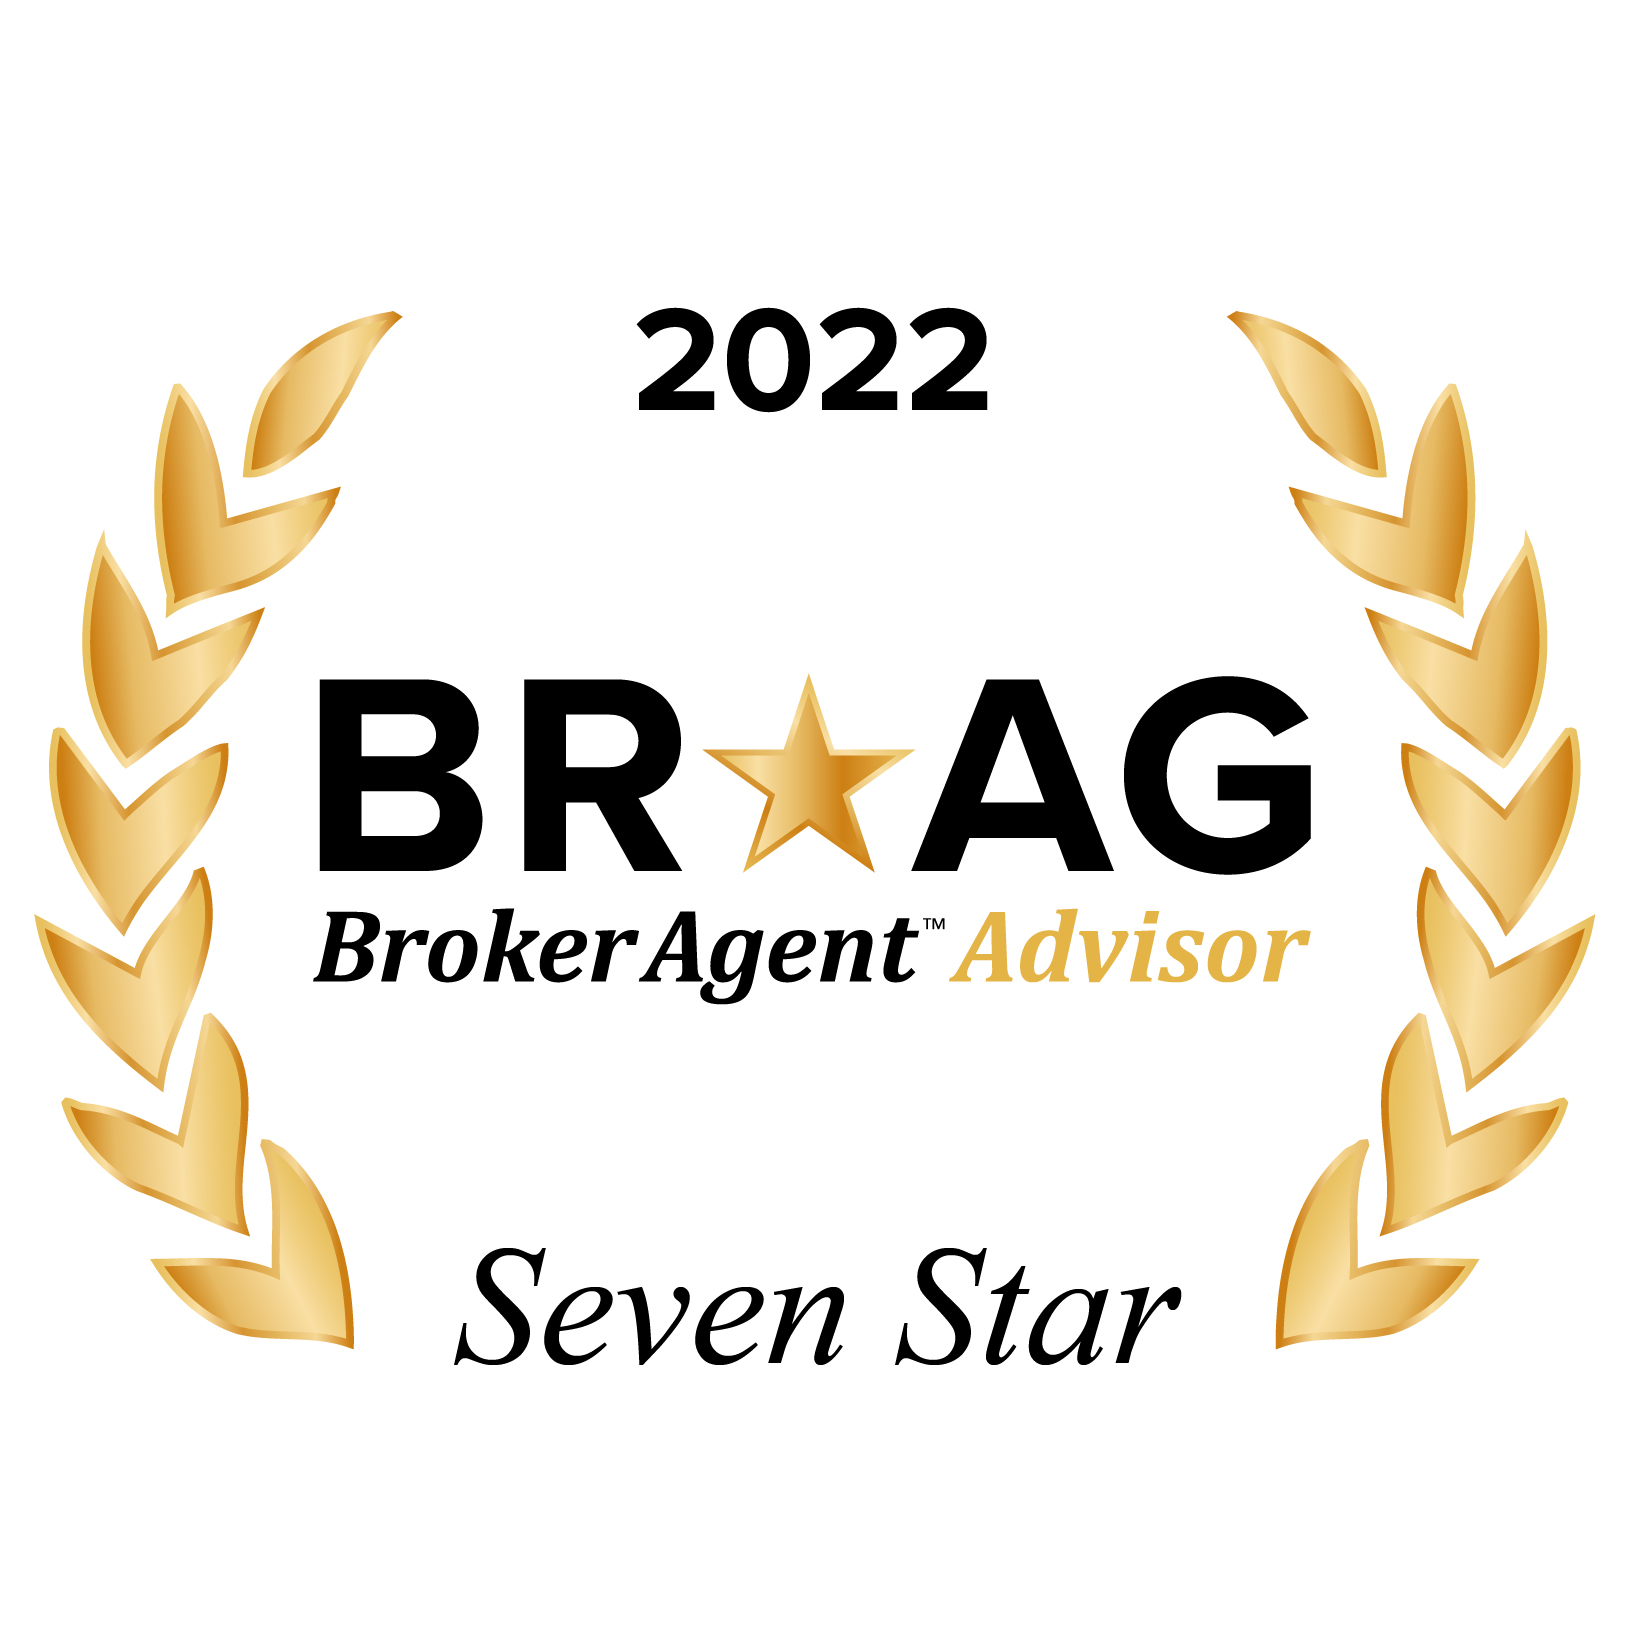 BRAG - Brocker Agent Advisor Badge